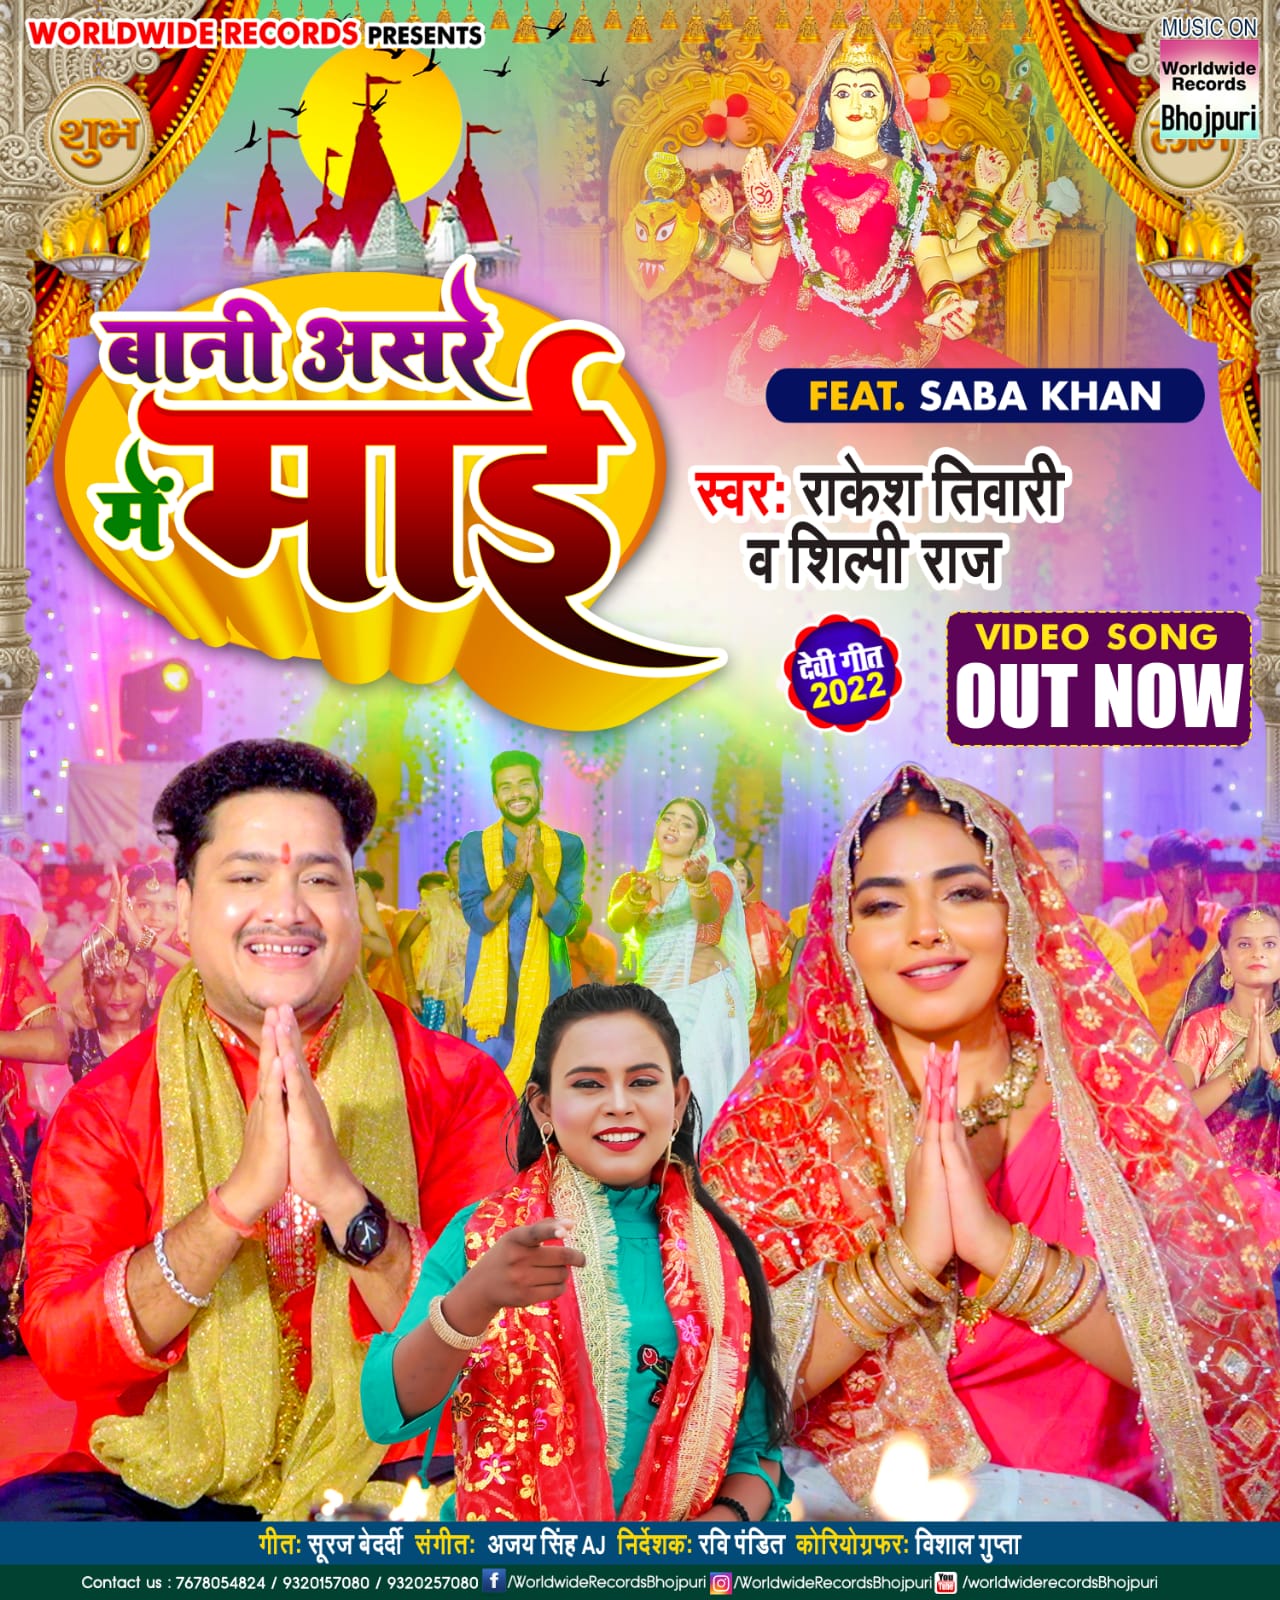 शिल्पी राज और राकेश तिवारी संग सबा खान के नए देवी गीत ‘बानी असरे में माई’ हुआ रिलीज